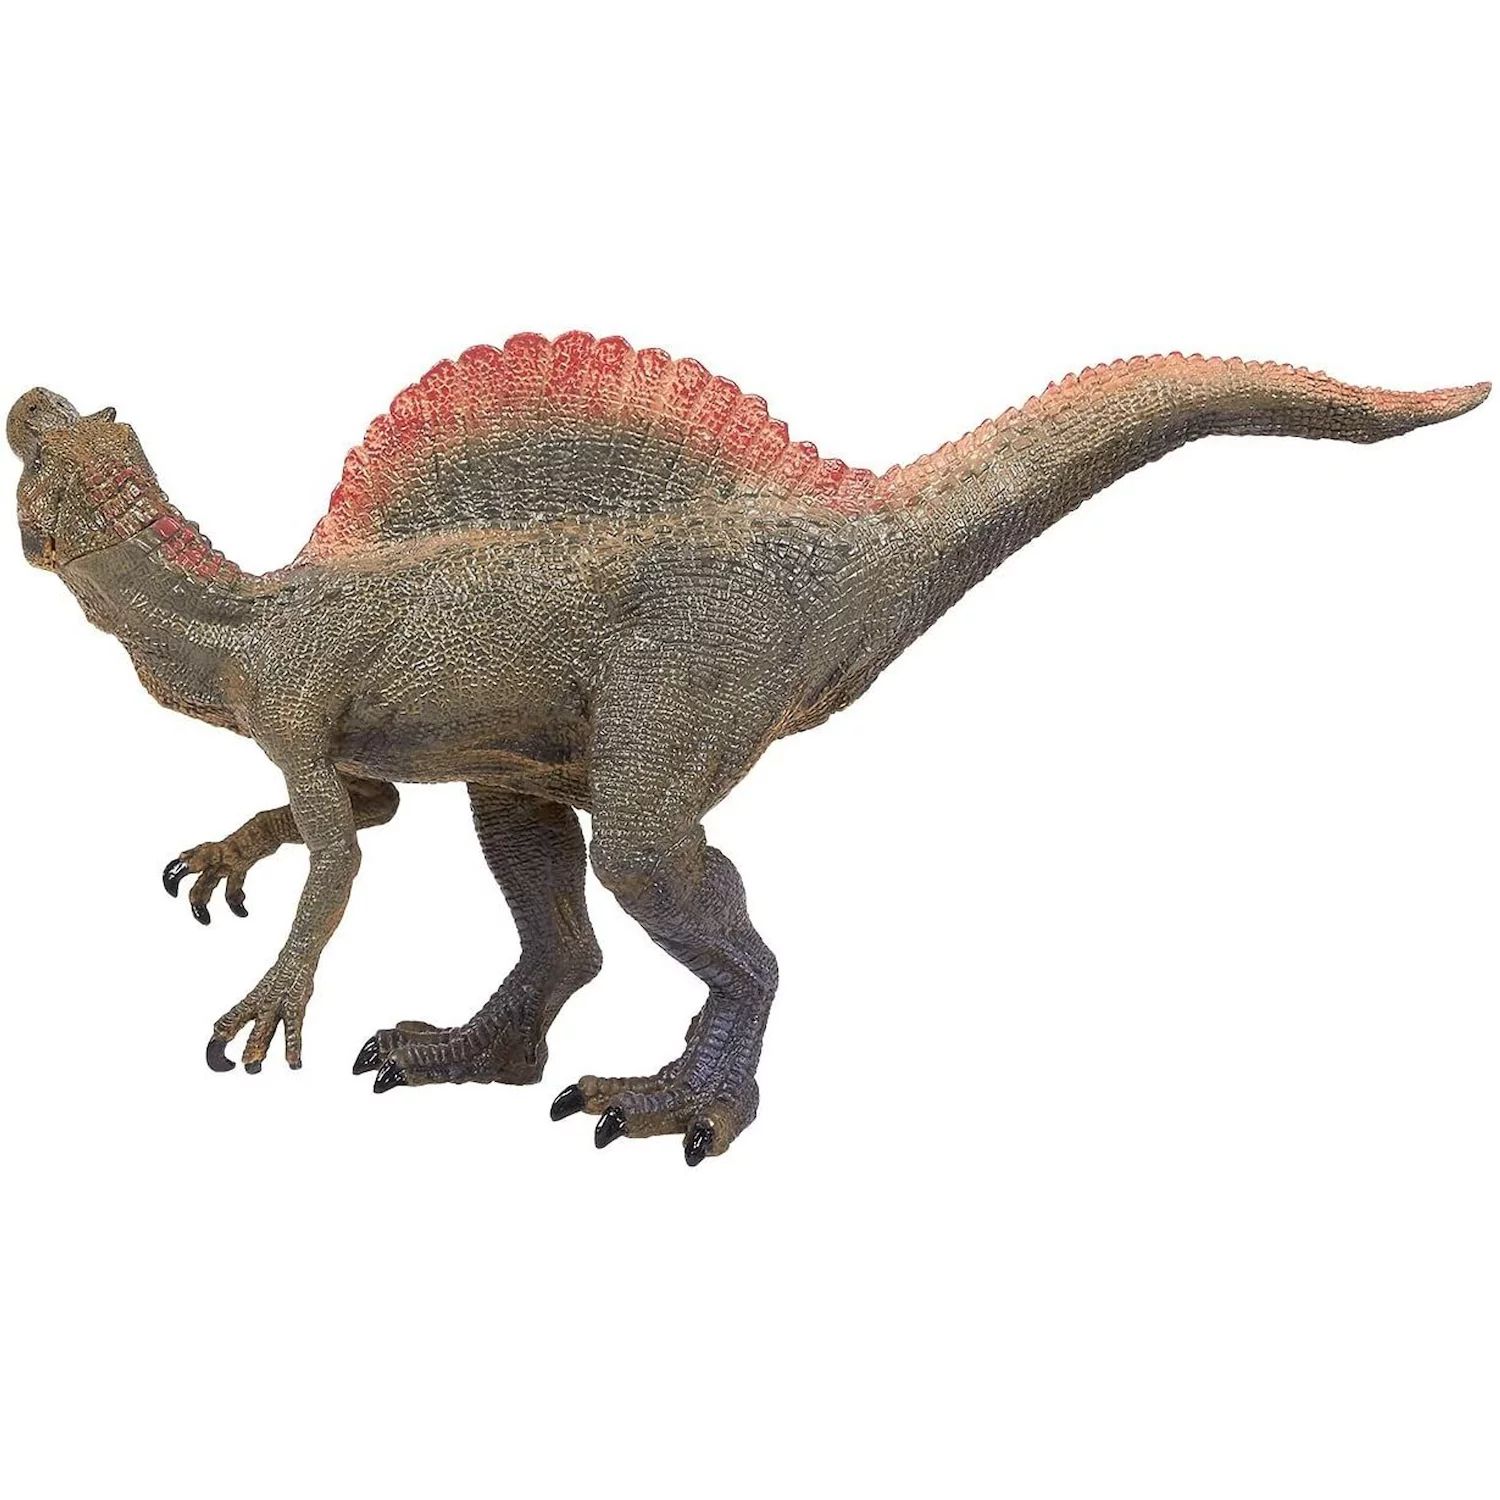 Игрушка-динозавр, фигурка спинозавра с подвижной челюстью — реалистичная пластиковая фигурка динозавра для детей, тематические вечеринки, украшения, зеленый цвет — 11,5 х 6 х 3,5 дюйма Juvale